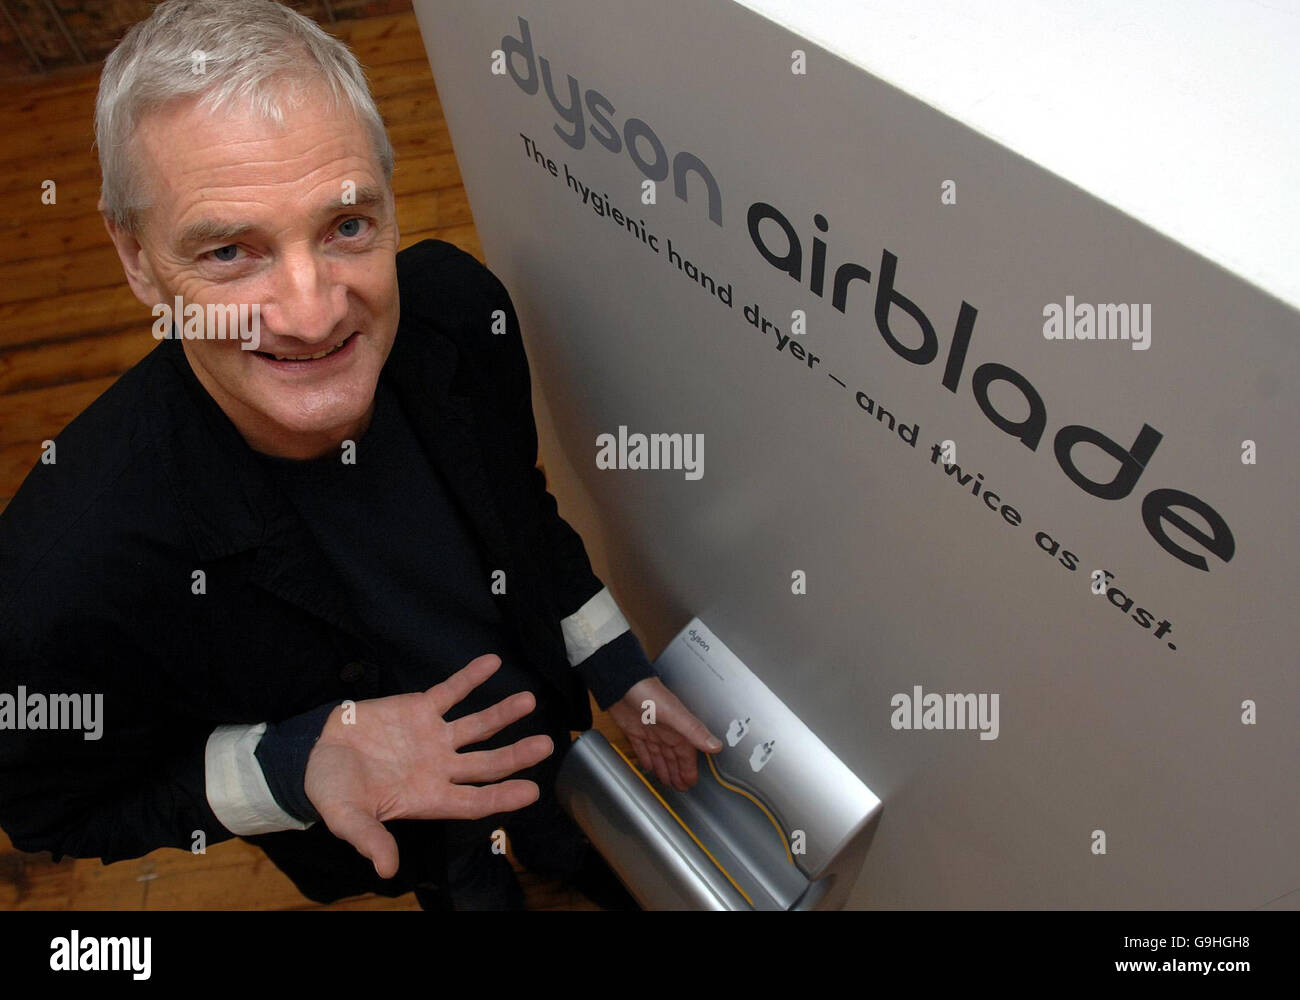 Aspirapolvere re James Dyson con la sua nuova invenzione l'Airblade, un'asciugatrice ad alta velocità per i servizi igienici pubblici, durante un'inaugurazione a Londra. Foto Stock